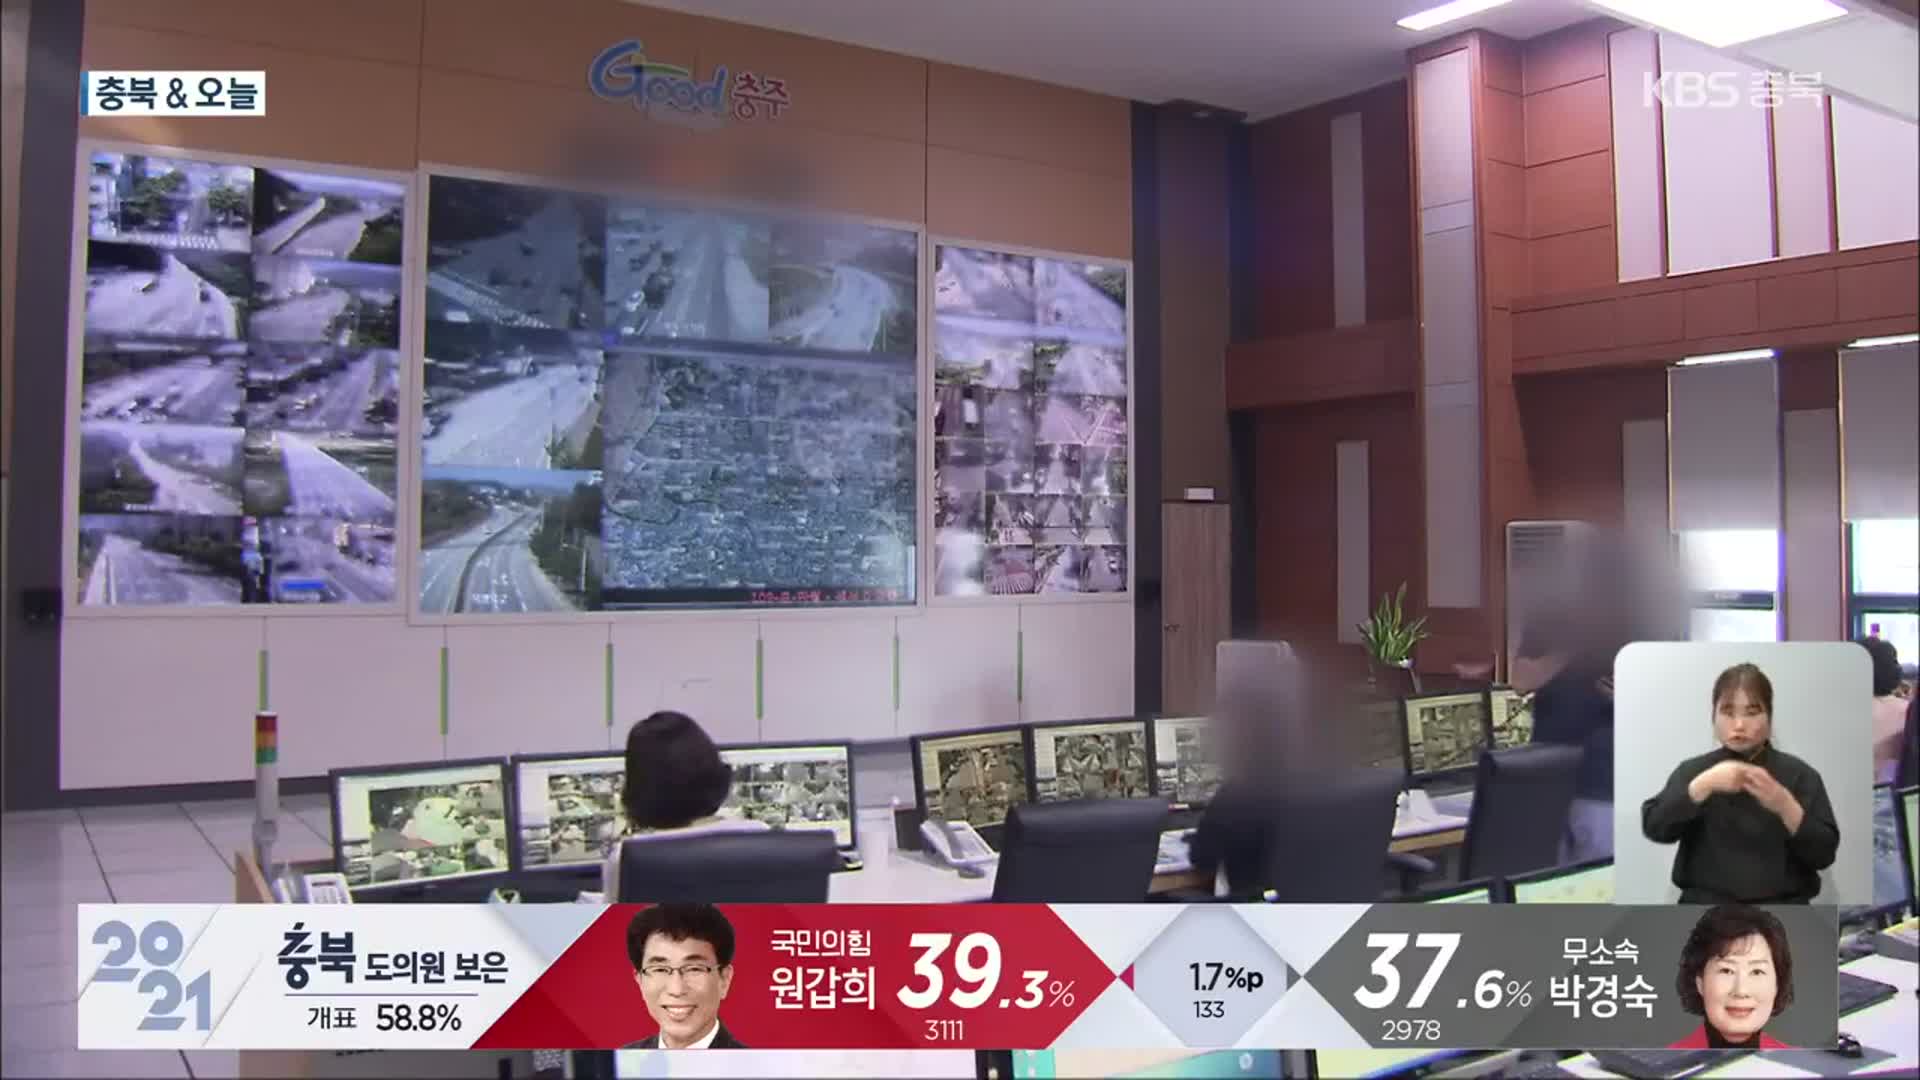 [충북&오늘] CCTV 관제센터에 ‘인공지능’ 도입